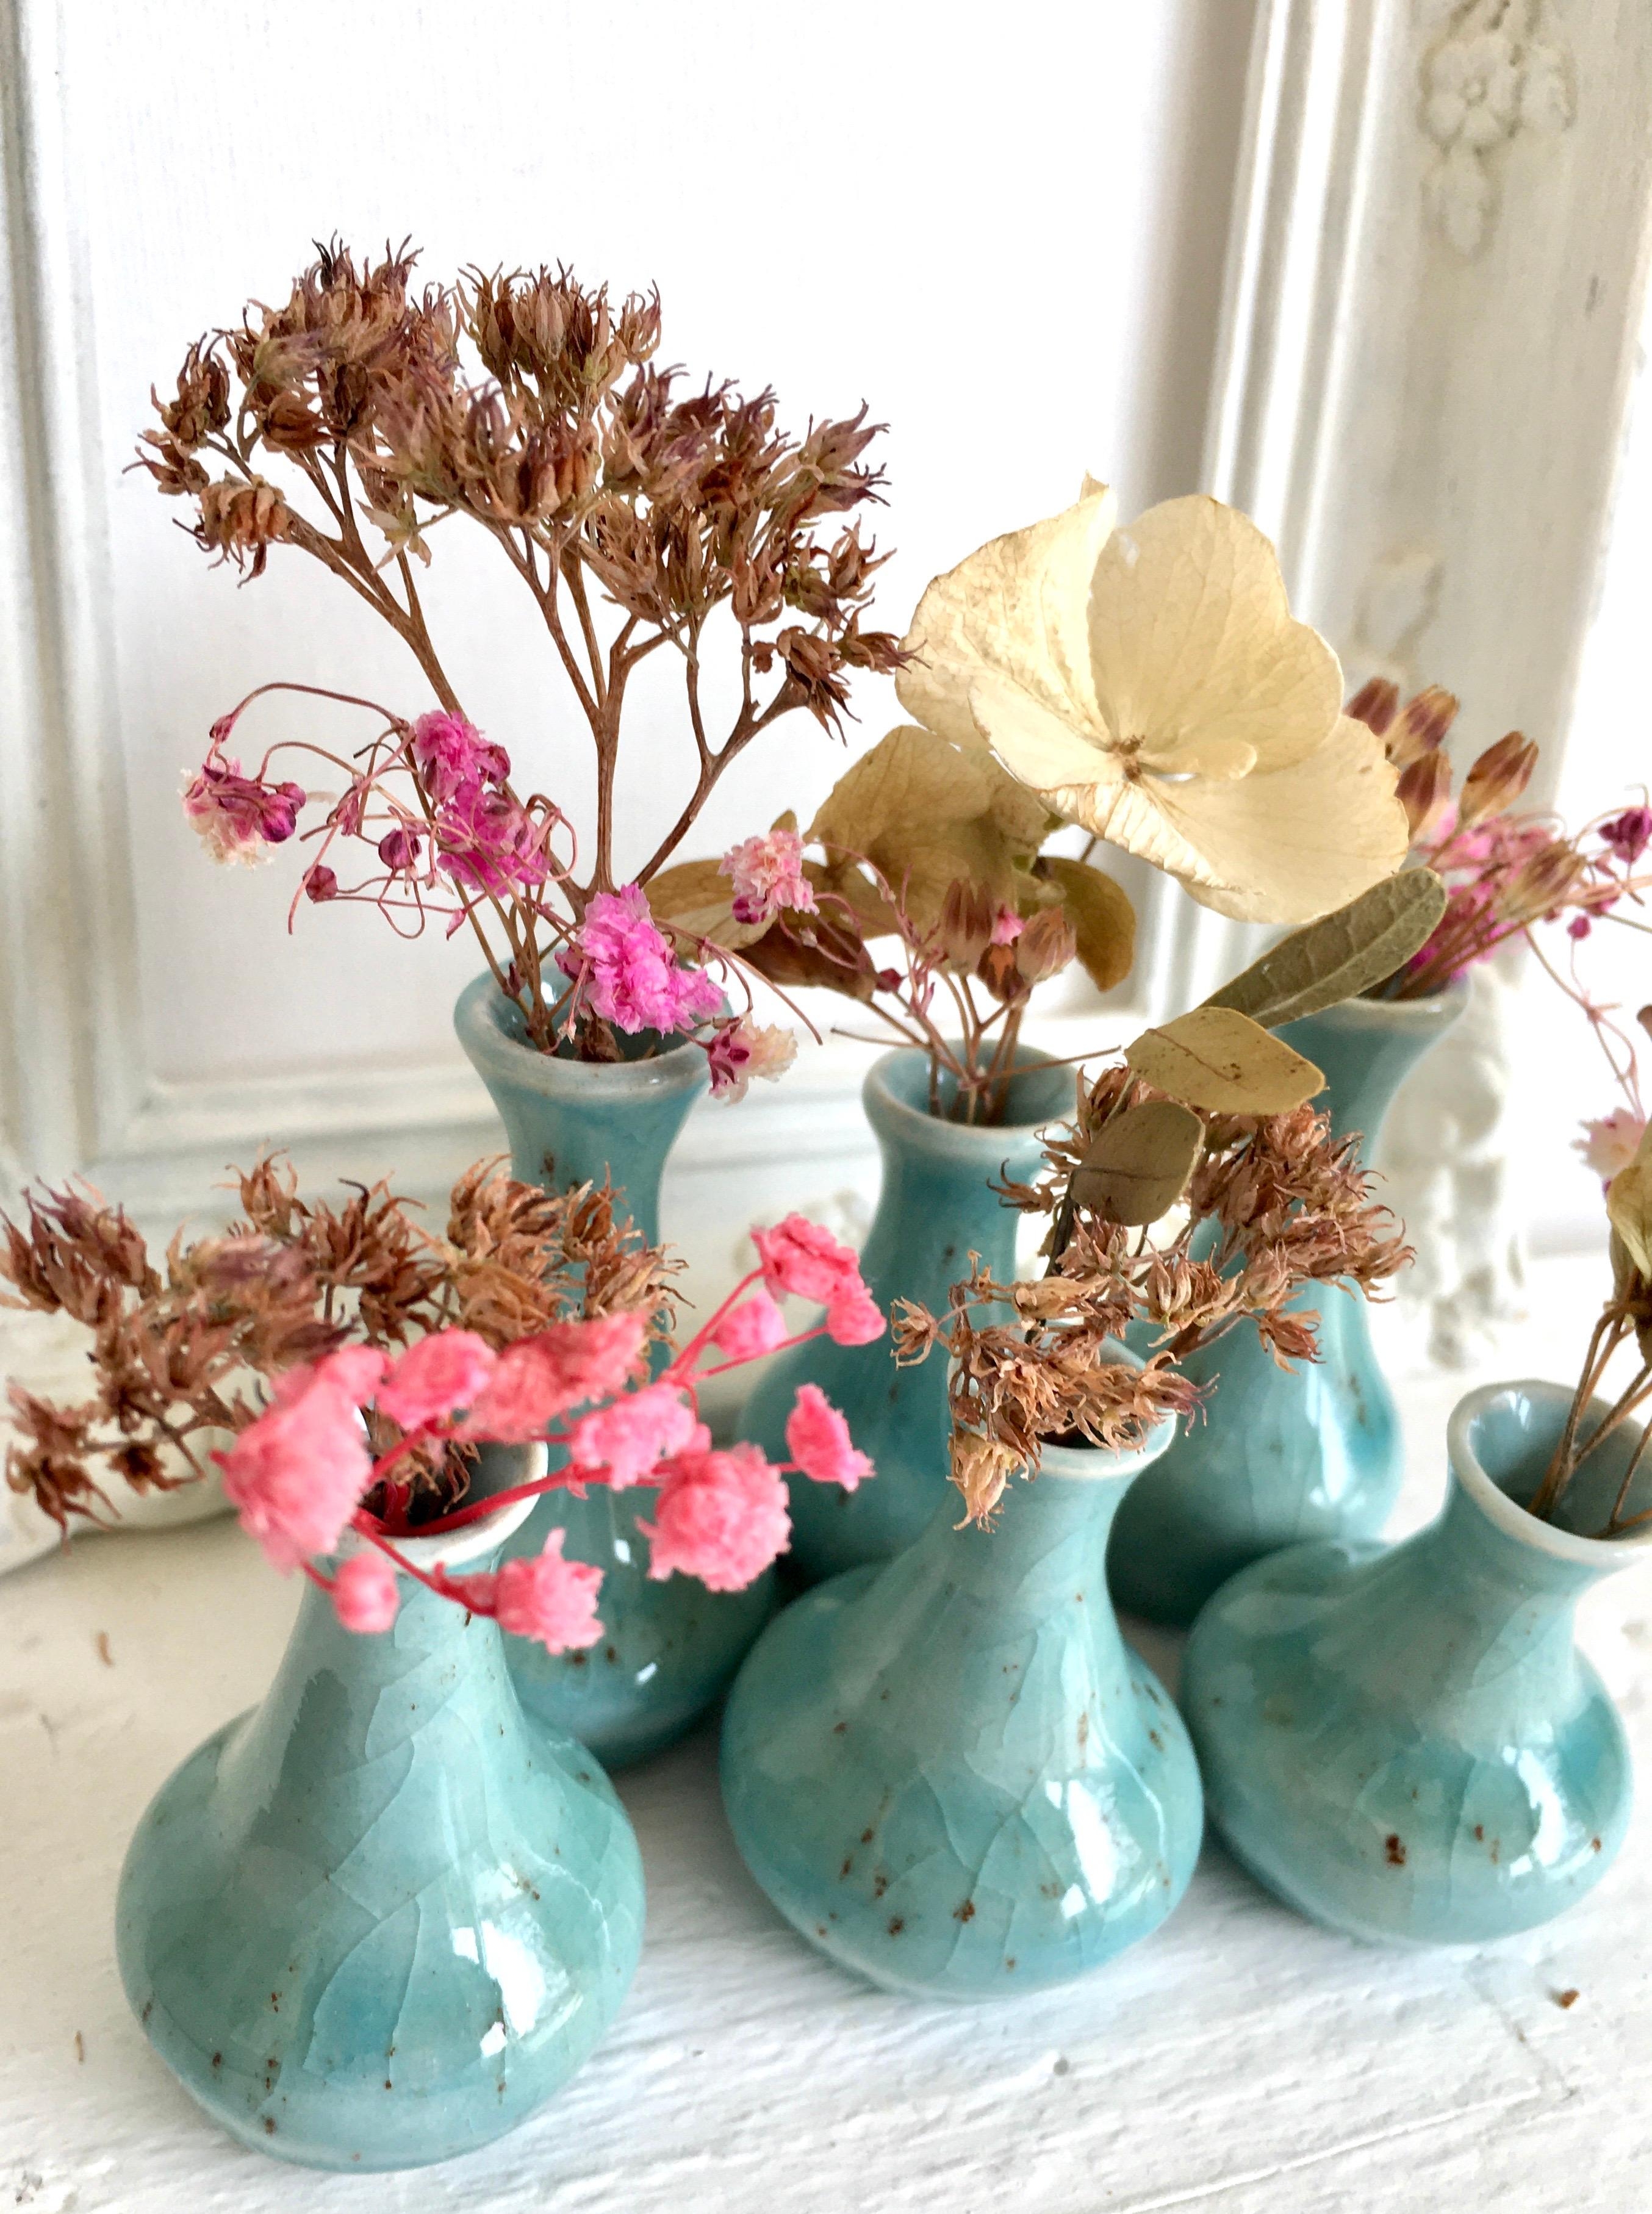 Sehnsucht nach Frühling ! Deko minimal mit maximalem Wohlfühleffekt ! #frühling #minivasen #türkis #keramik #pink